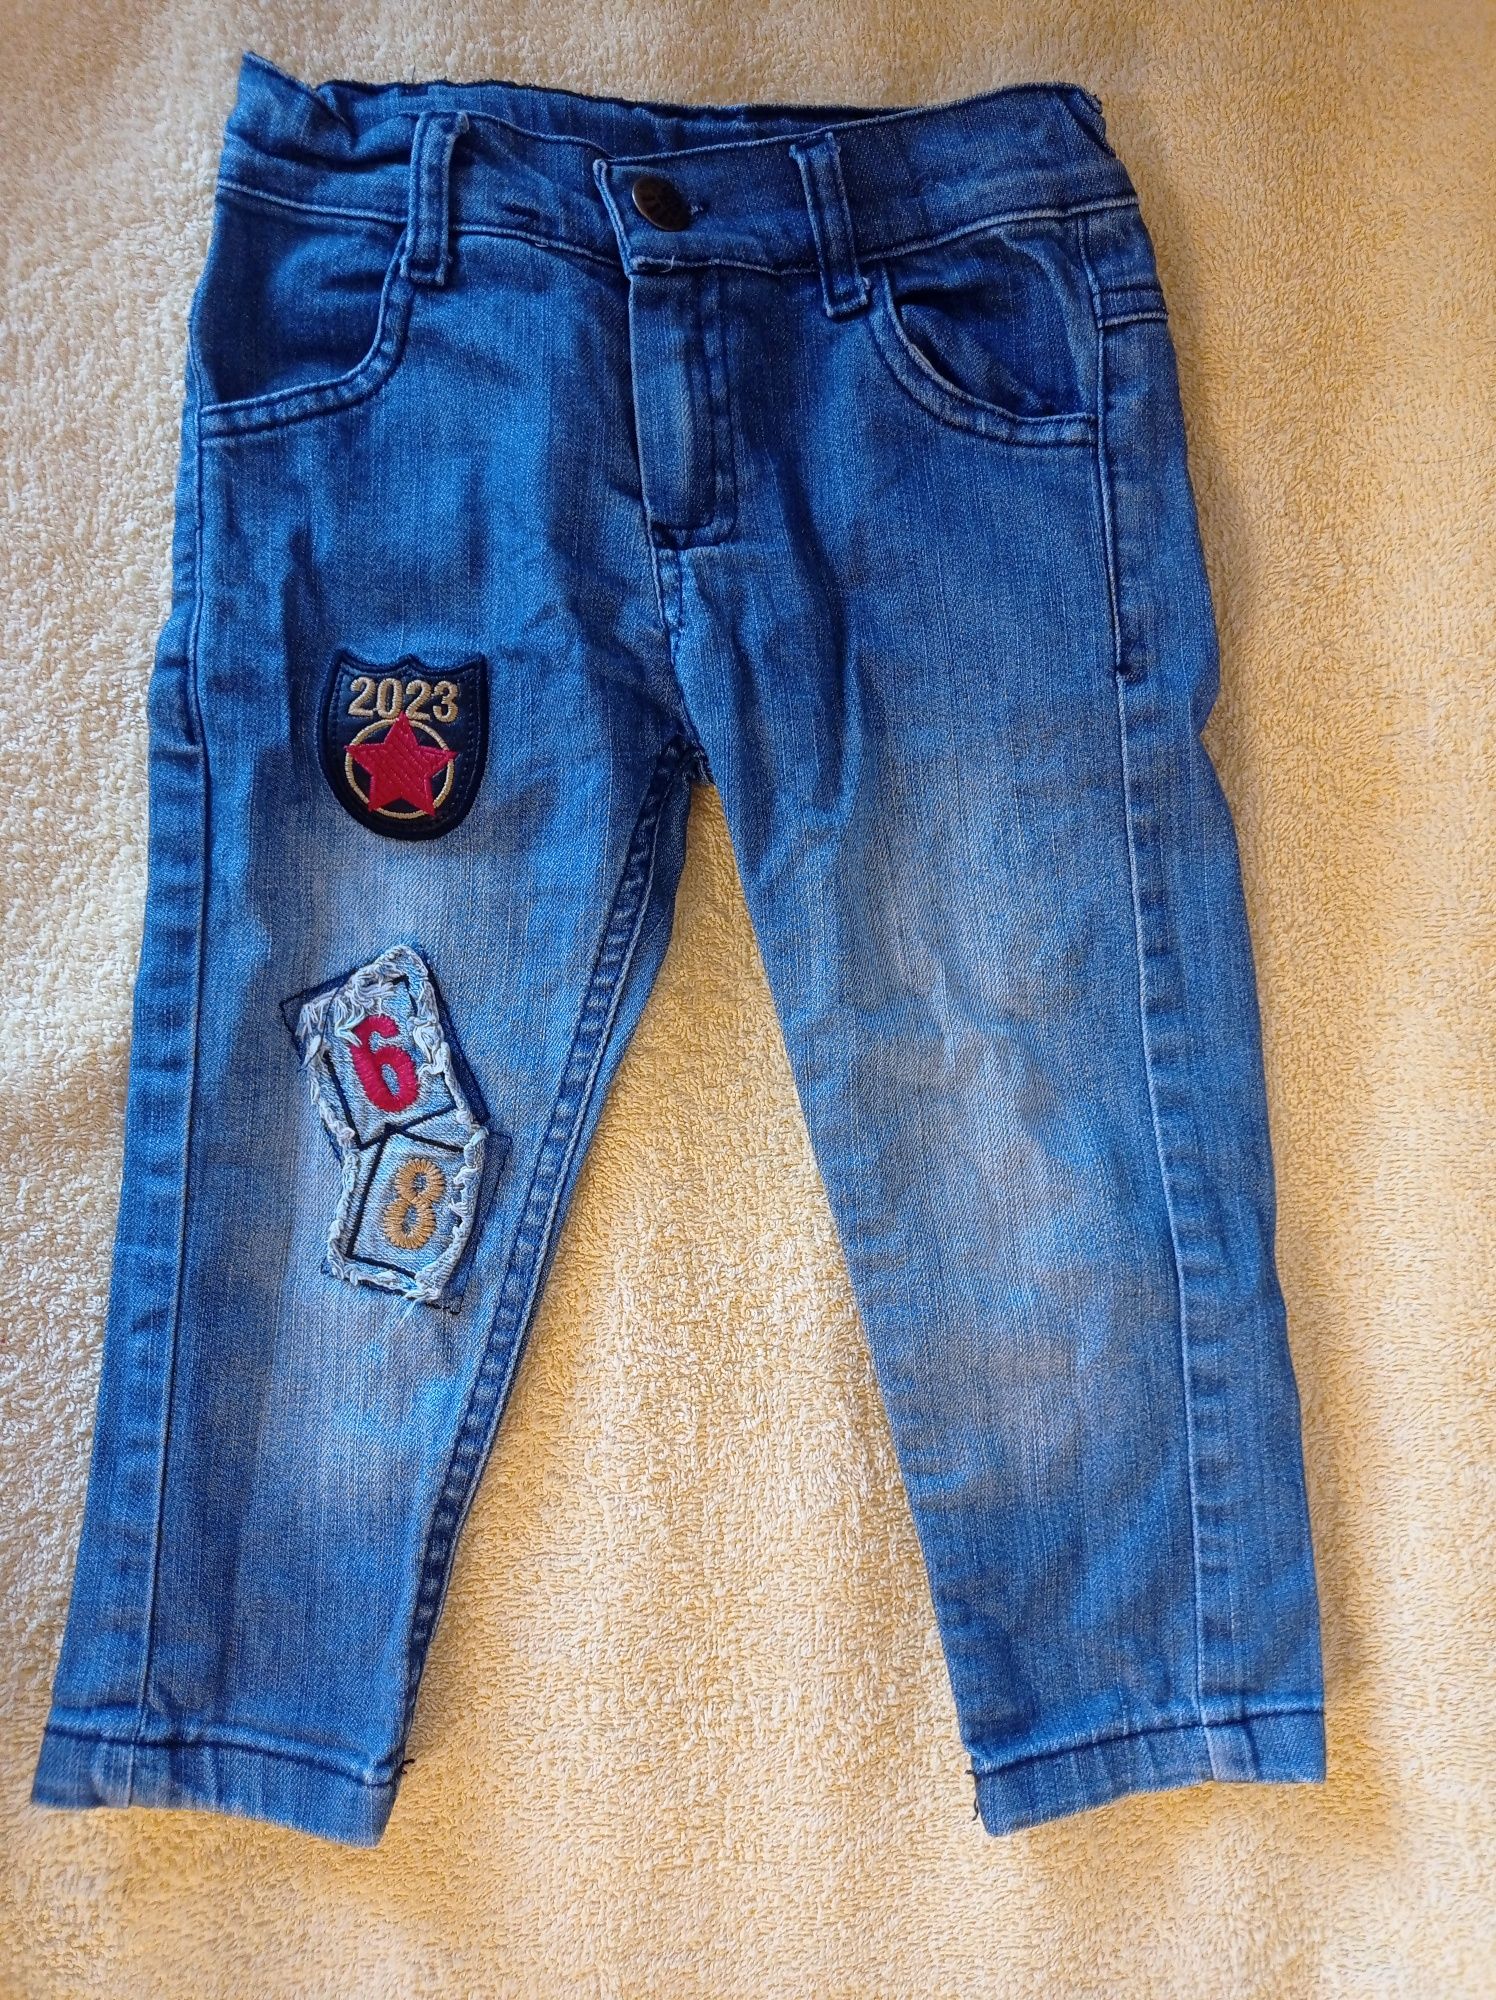 Детские джинсы на 1 годик